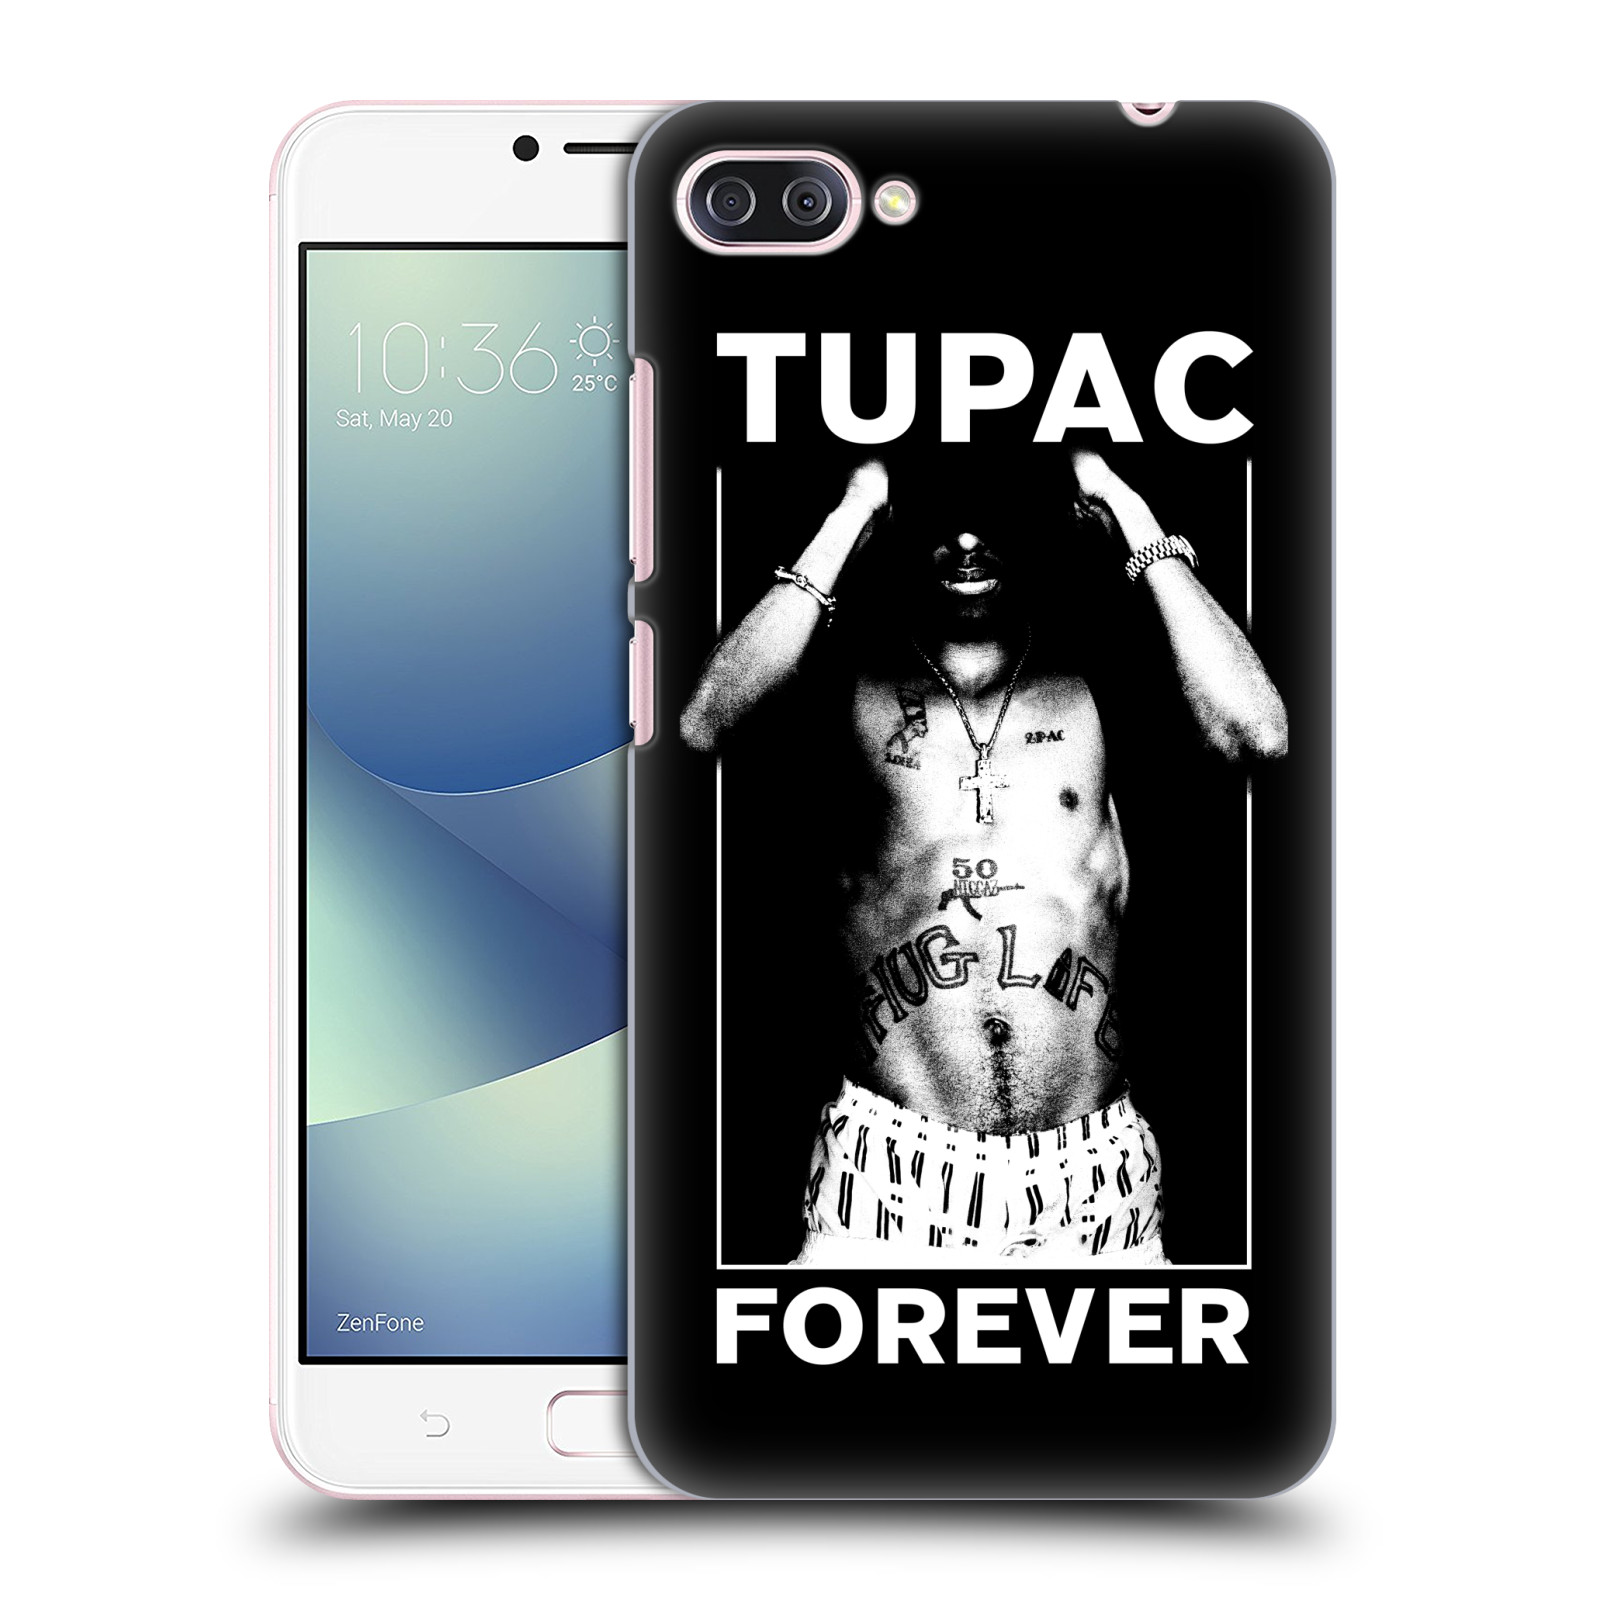 HEAD CASE plastový obal na mobil Asus Zenfone 4 MAX ZC554KL Zpěvák rapper Tupac Shakur 2Pac bílý popisek FOREVER